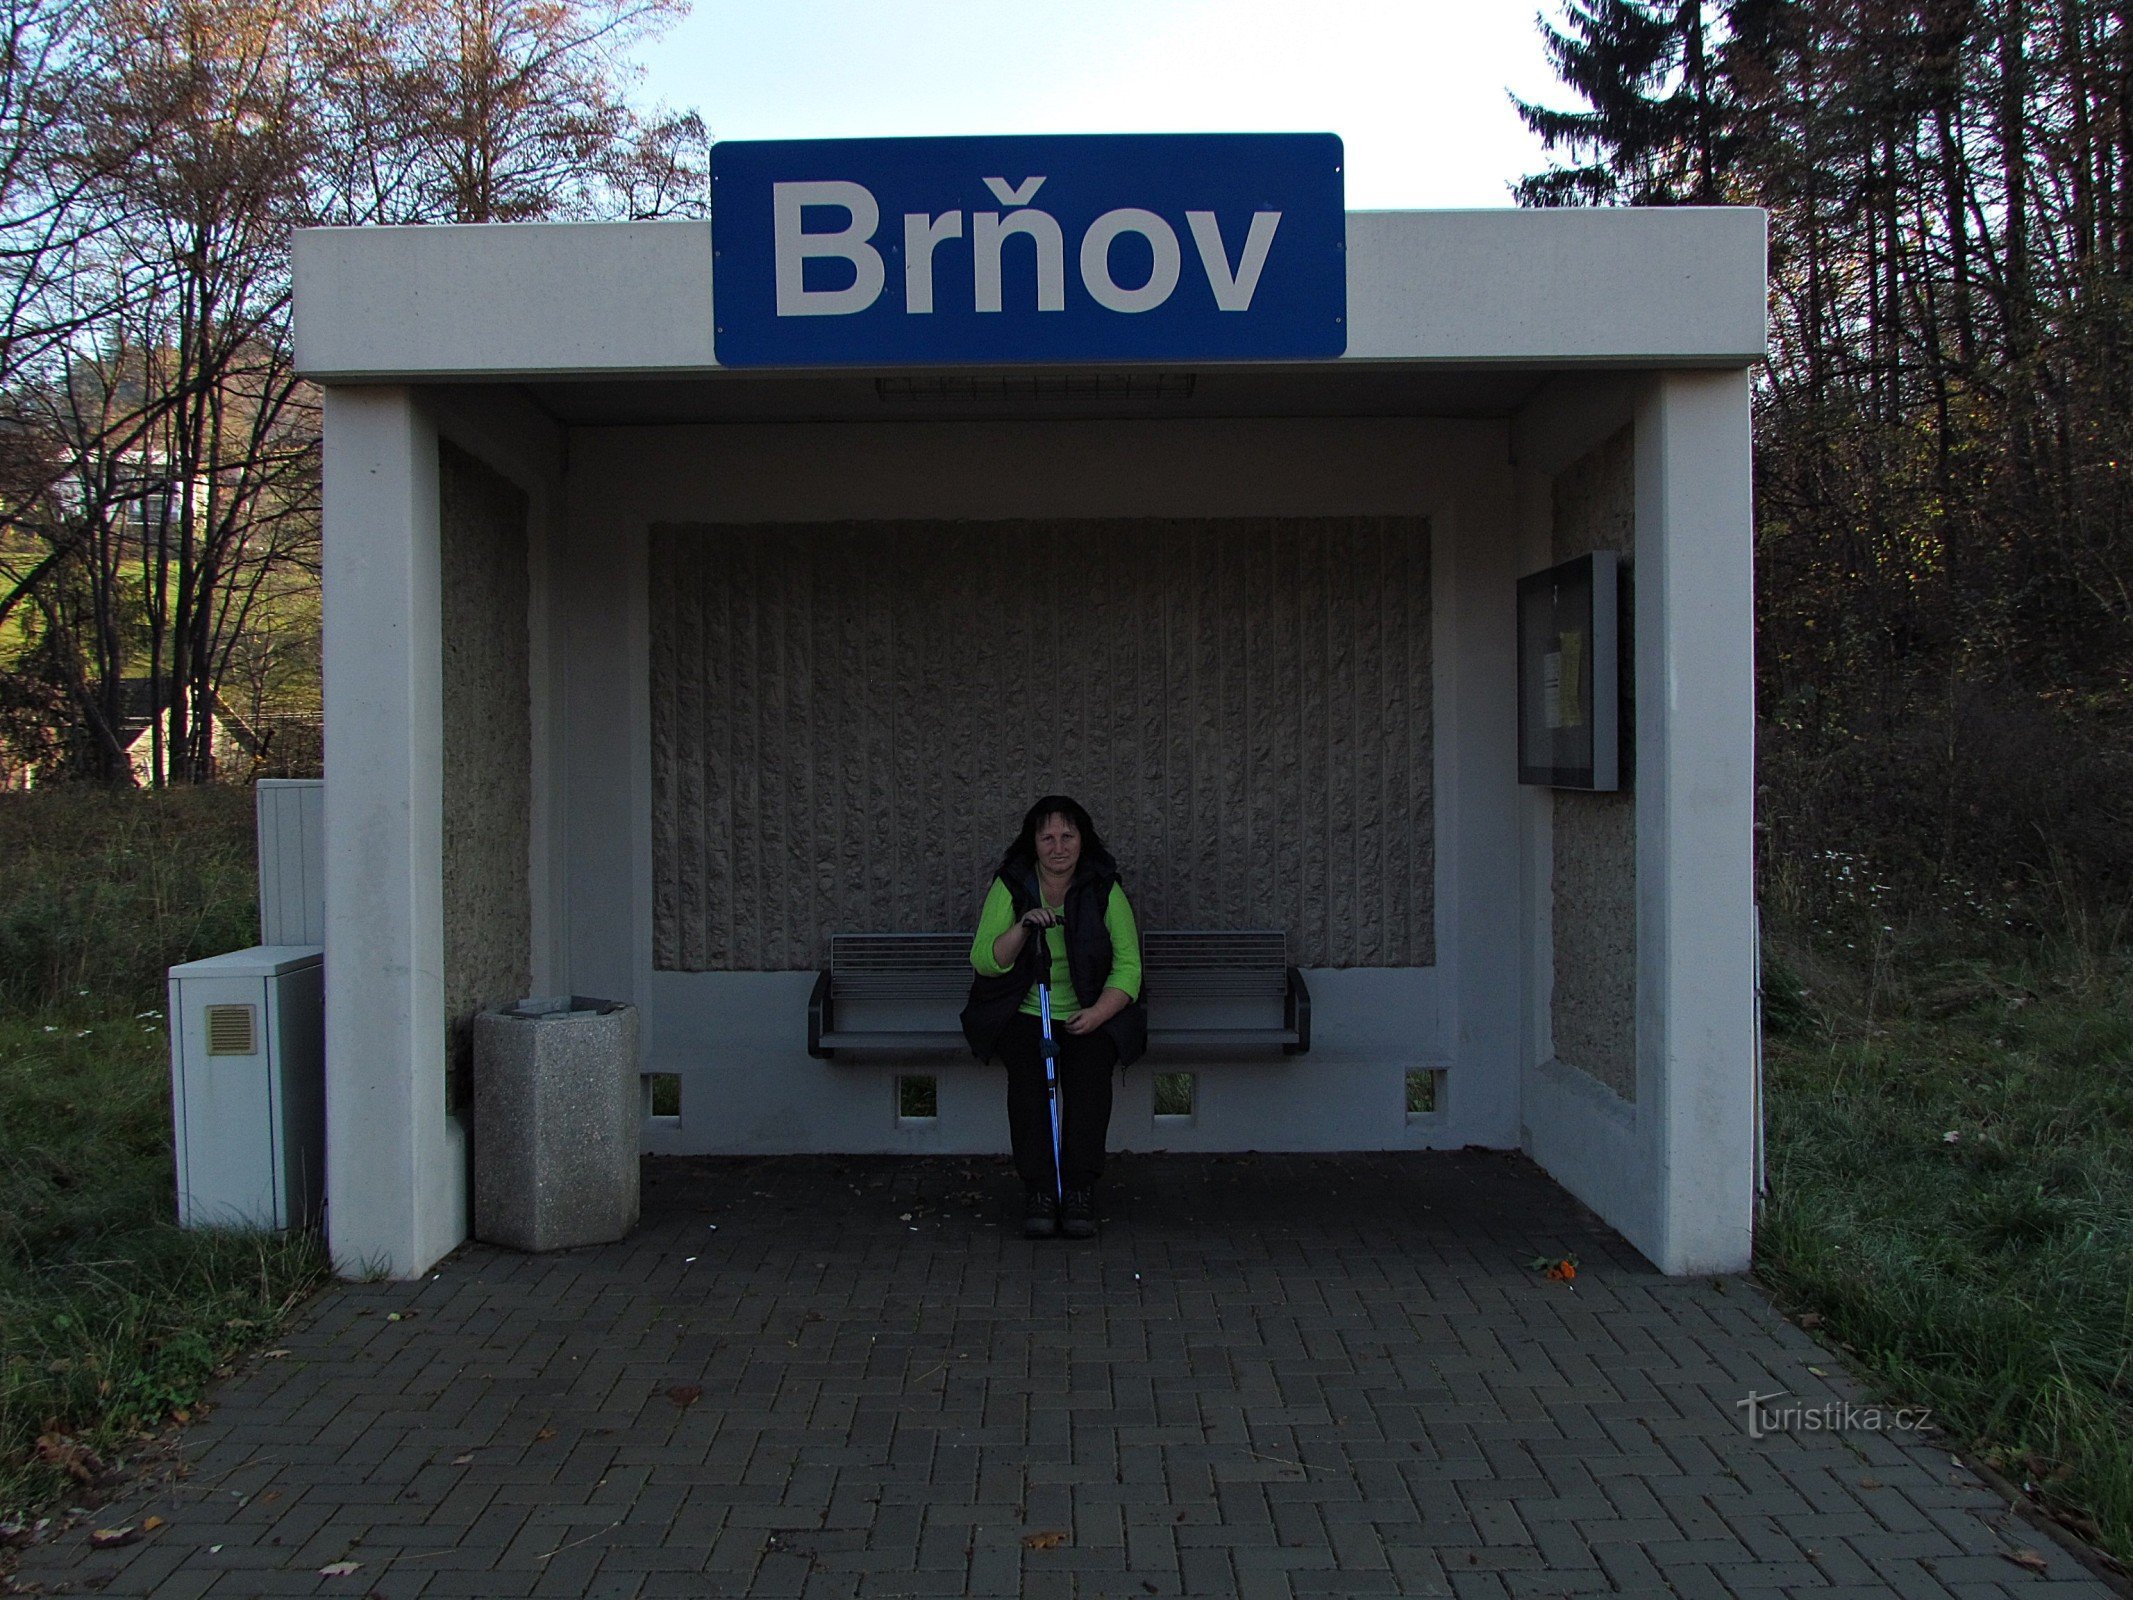 Σιδηροδρομικός σταθμός στο Μπρνο